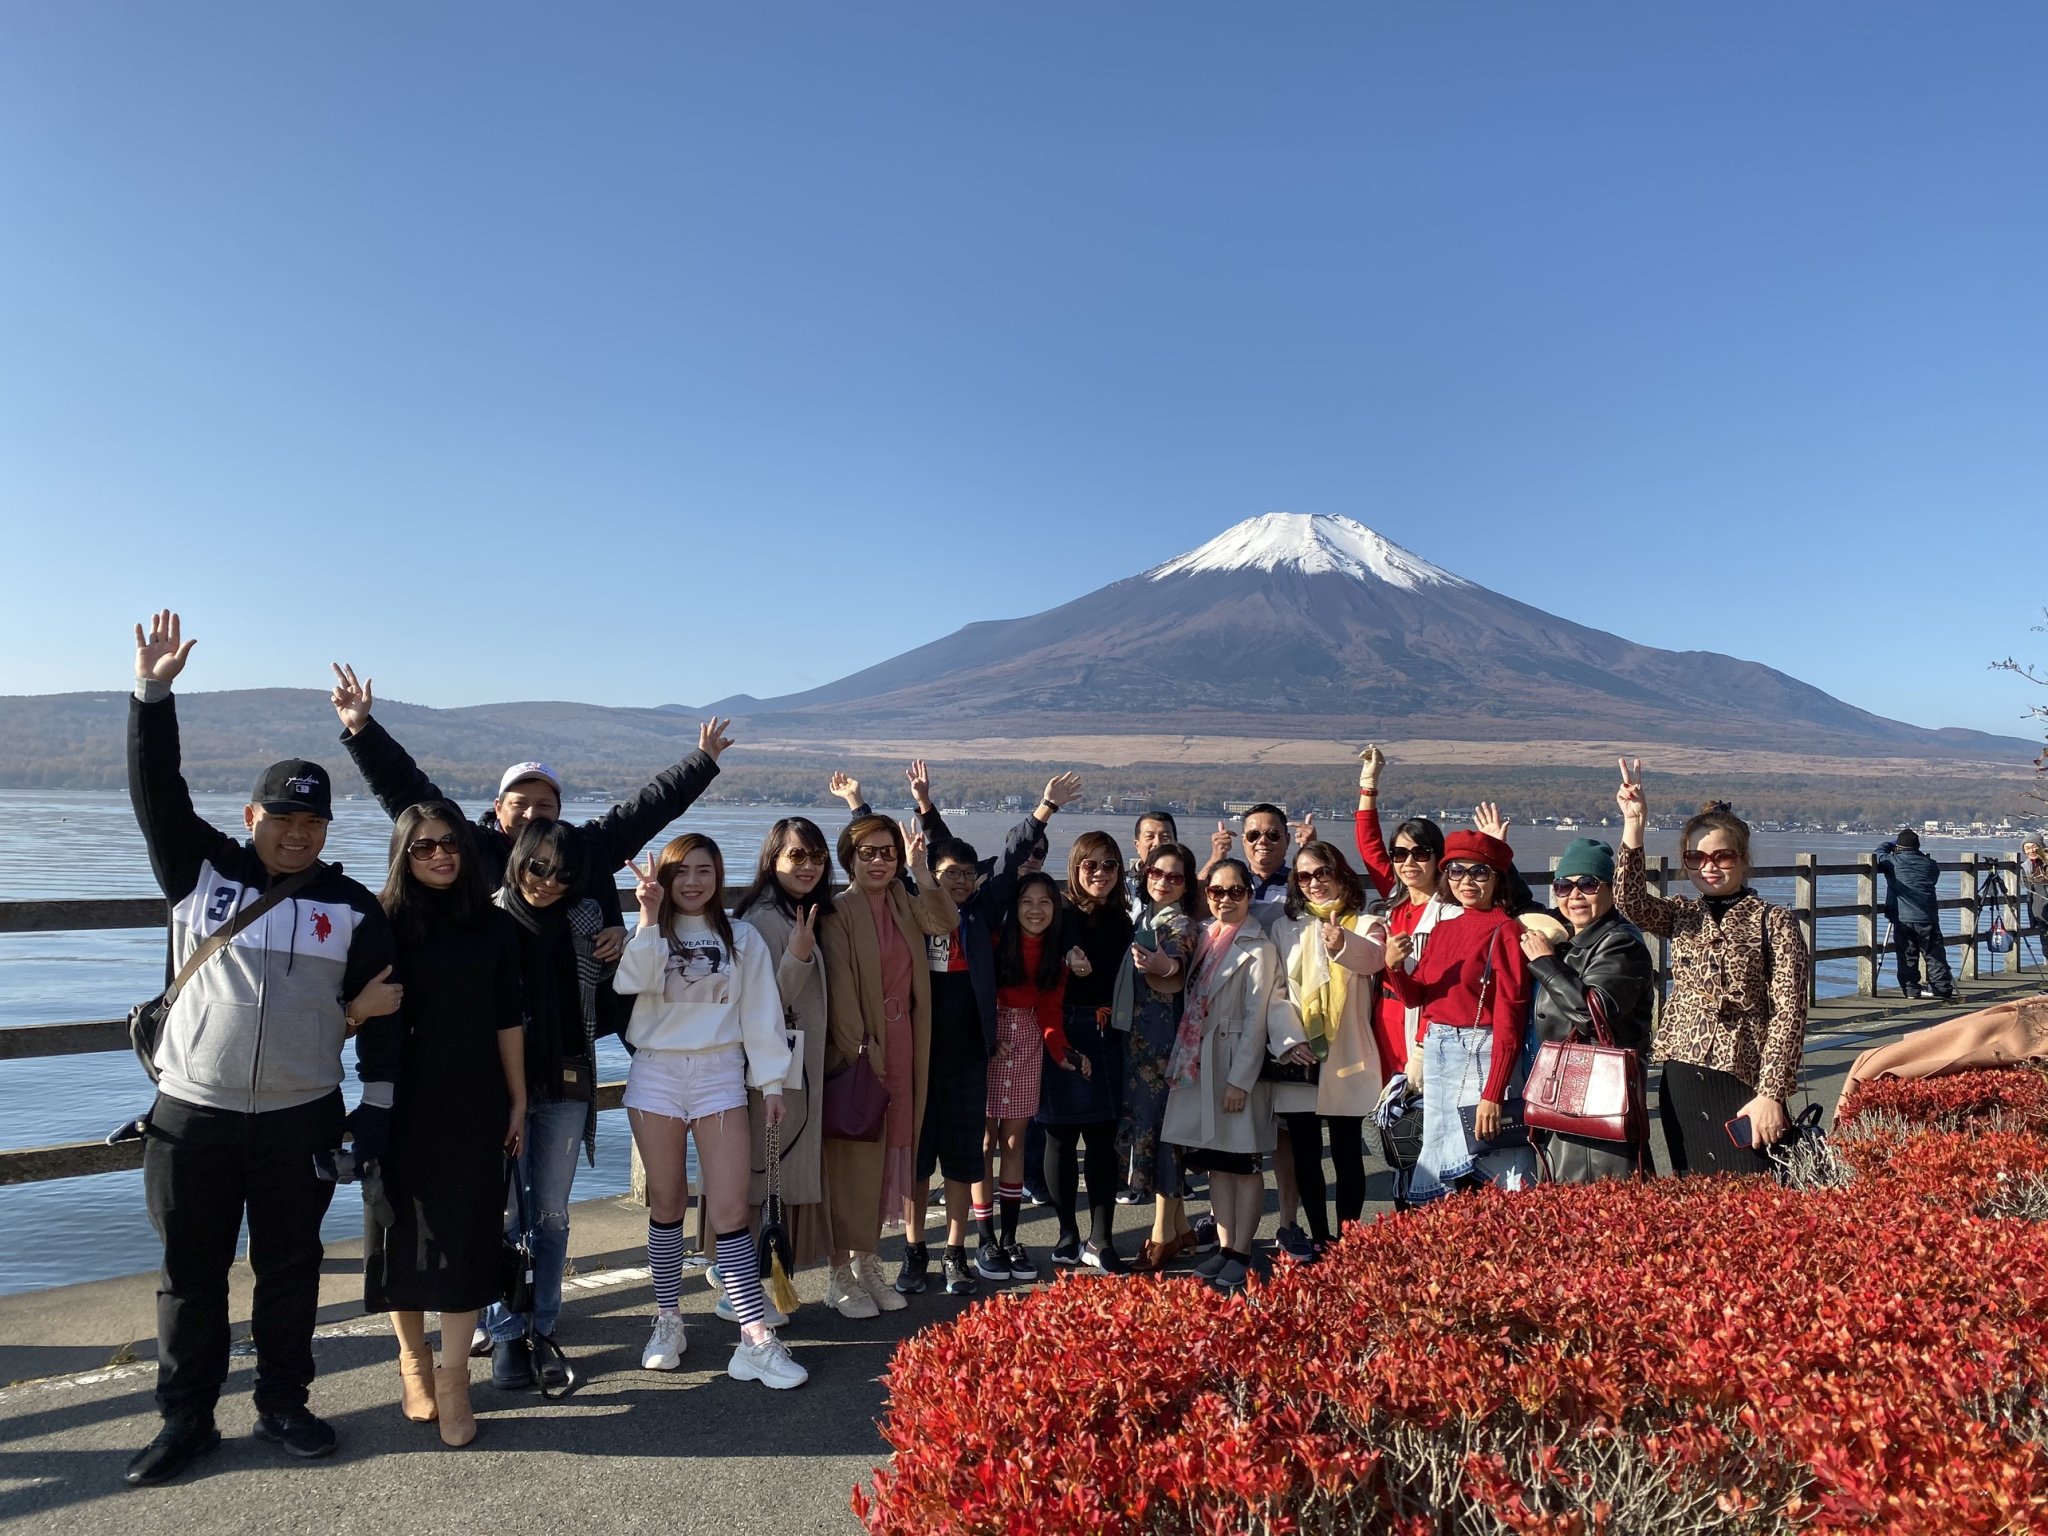 Du lịch Nhật Bản – Đoàn Nhật Bản KH 08.11.19